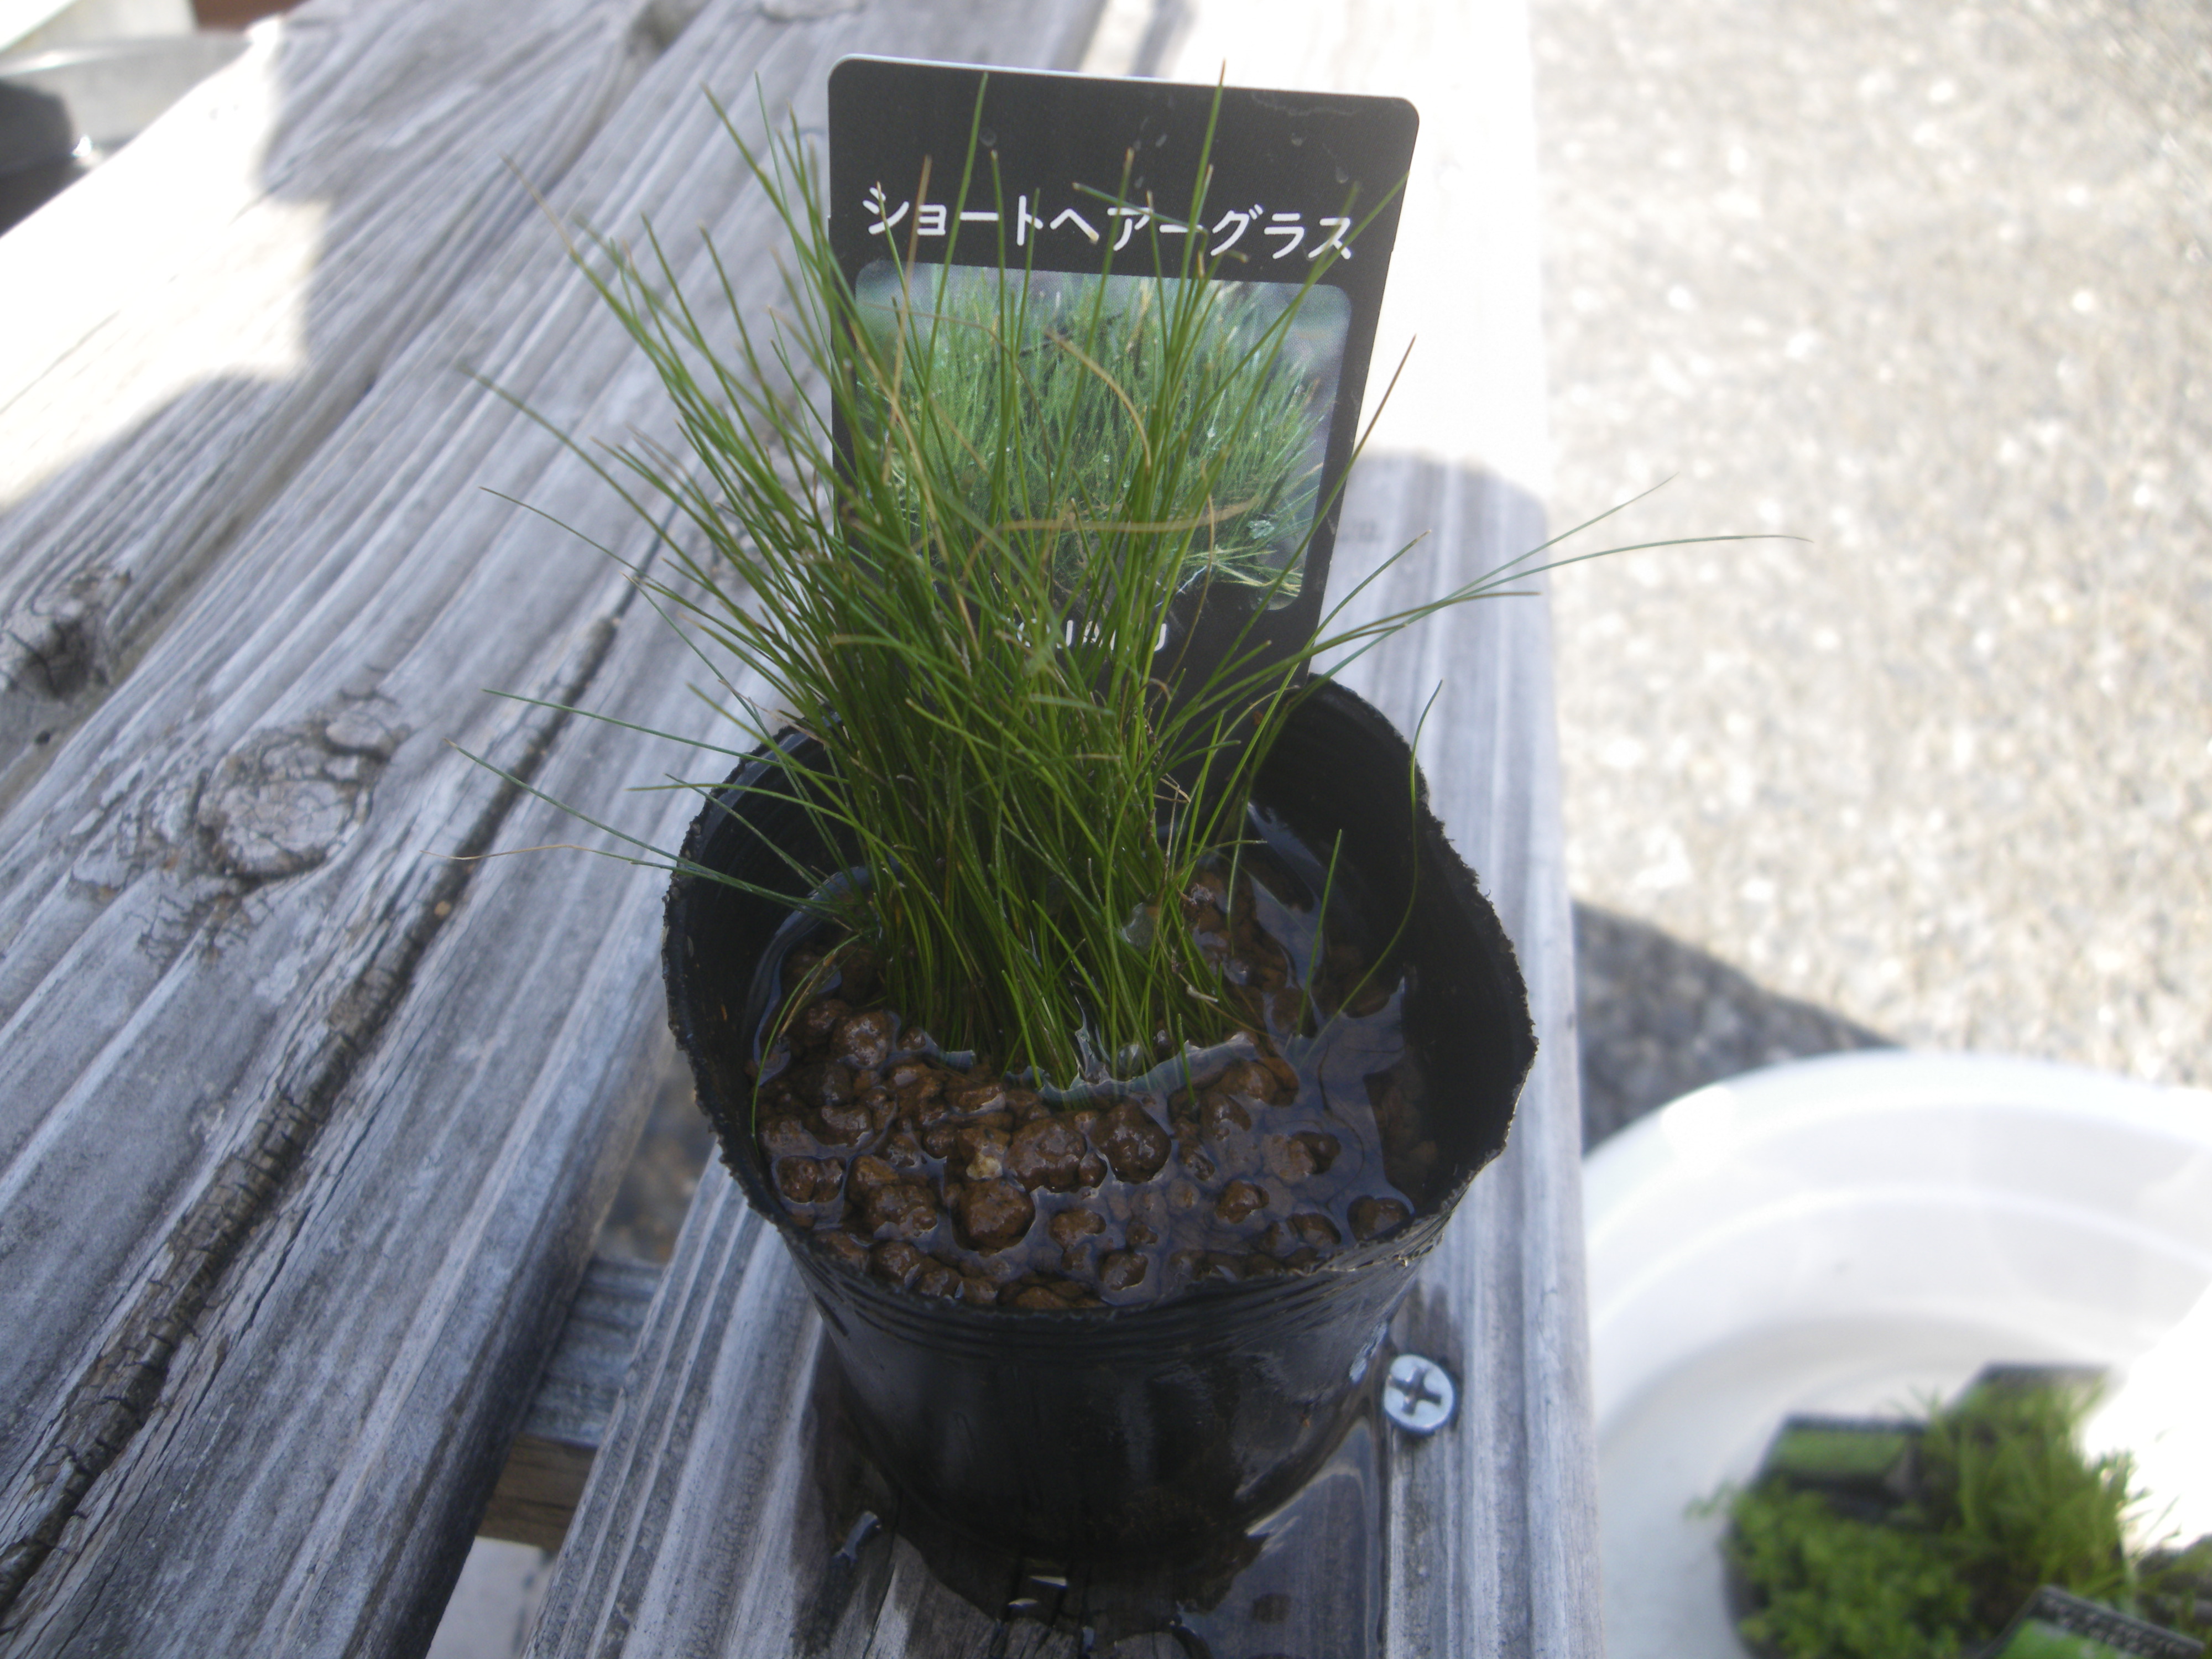 メダカの大工 Mosamosa Ashiko メダカブームの影響で ホームセンターでメダカの水草が販売されることが多くなりました 京都府の杜若園芸 Tojaku Engei の商品が多いです 小さい水草は初めて見ました 2号のビニールポットで400円くらいです 葉が小さく